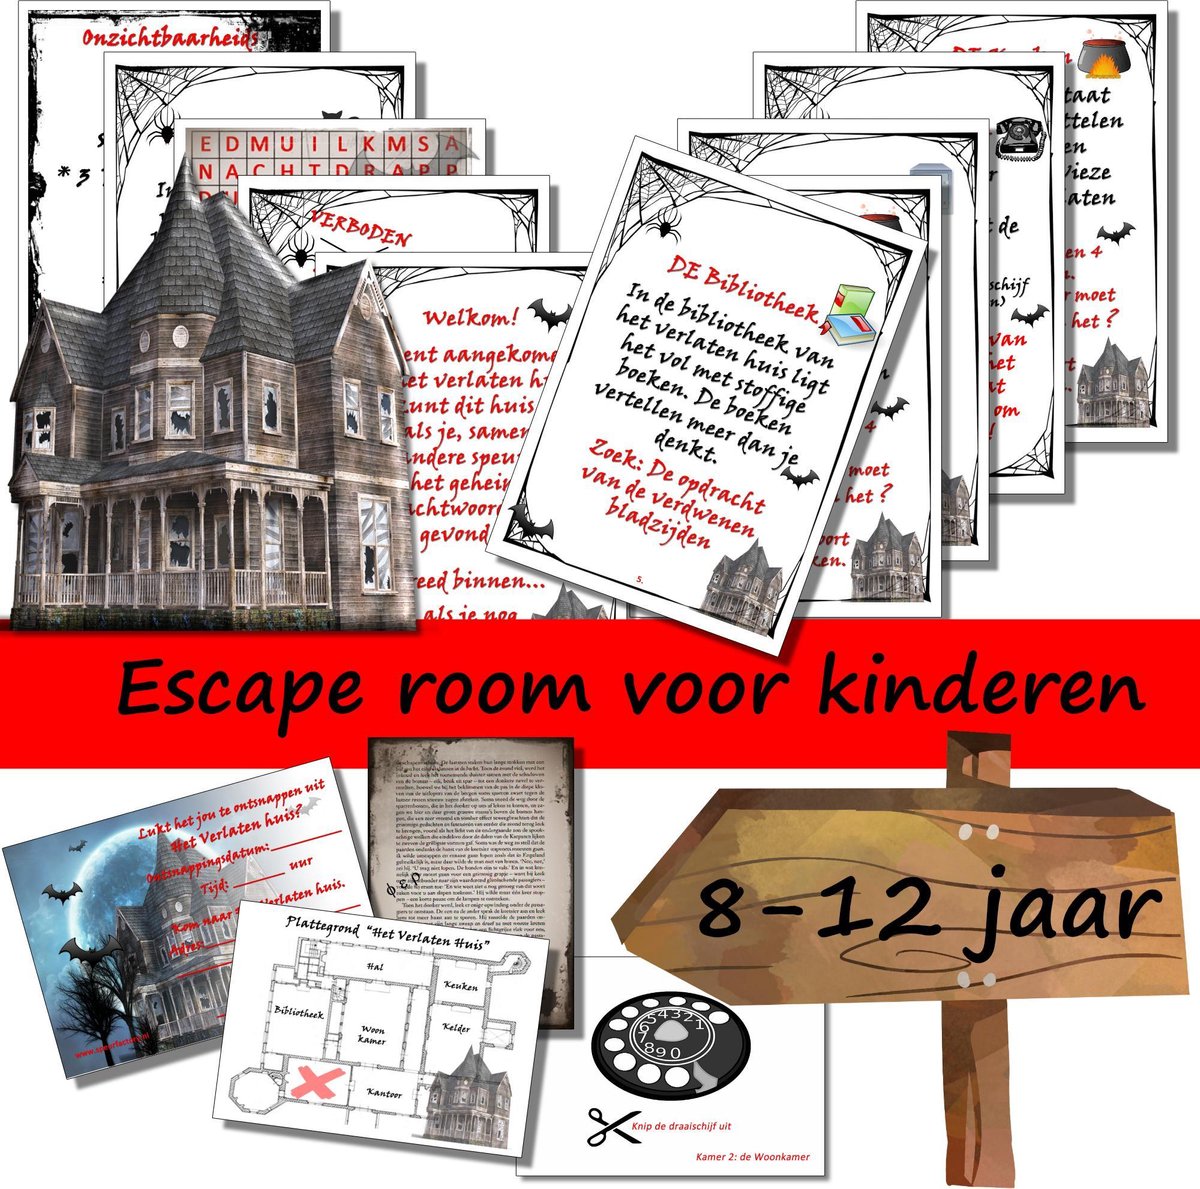 Escape room voor kinderen - Het verlaten huis - kinderfeestje - breinbreker - 8 t/m 12 jaar - compleet draaiboek - print zelf uit! - Speurfactory